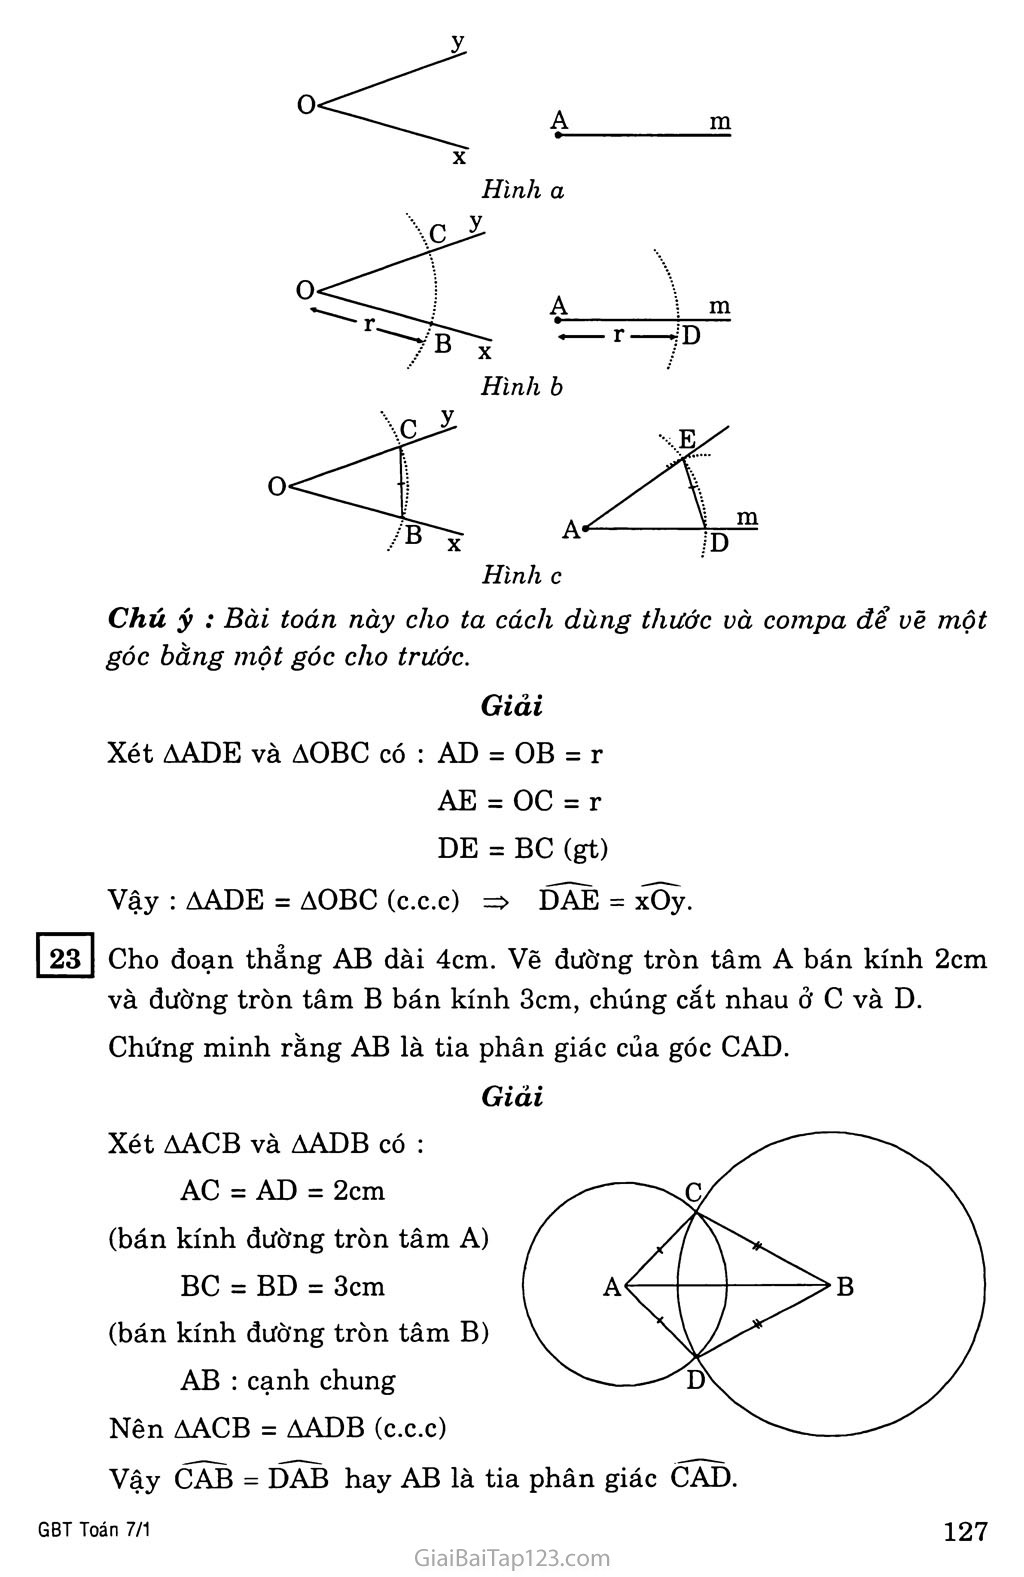 §3. Trường hợp bằng nhau thứ nhất của tam giác: cạnh - cạnh - cạnh (c.c.c) trang 5